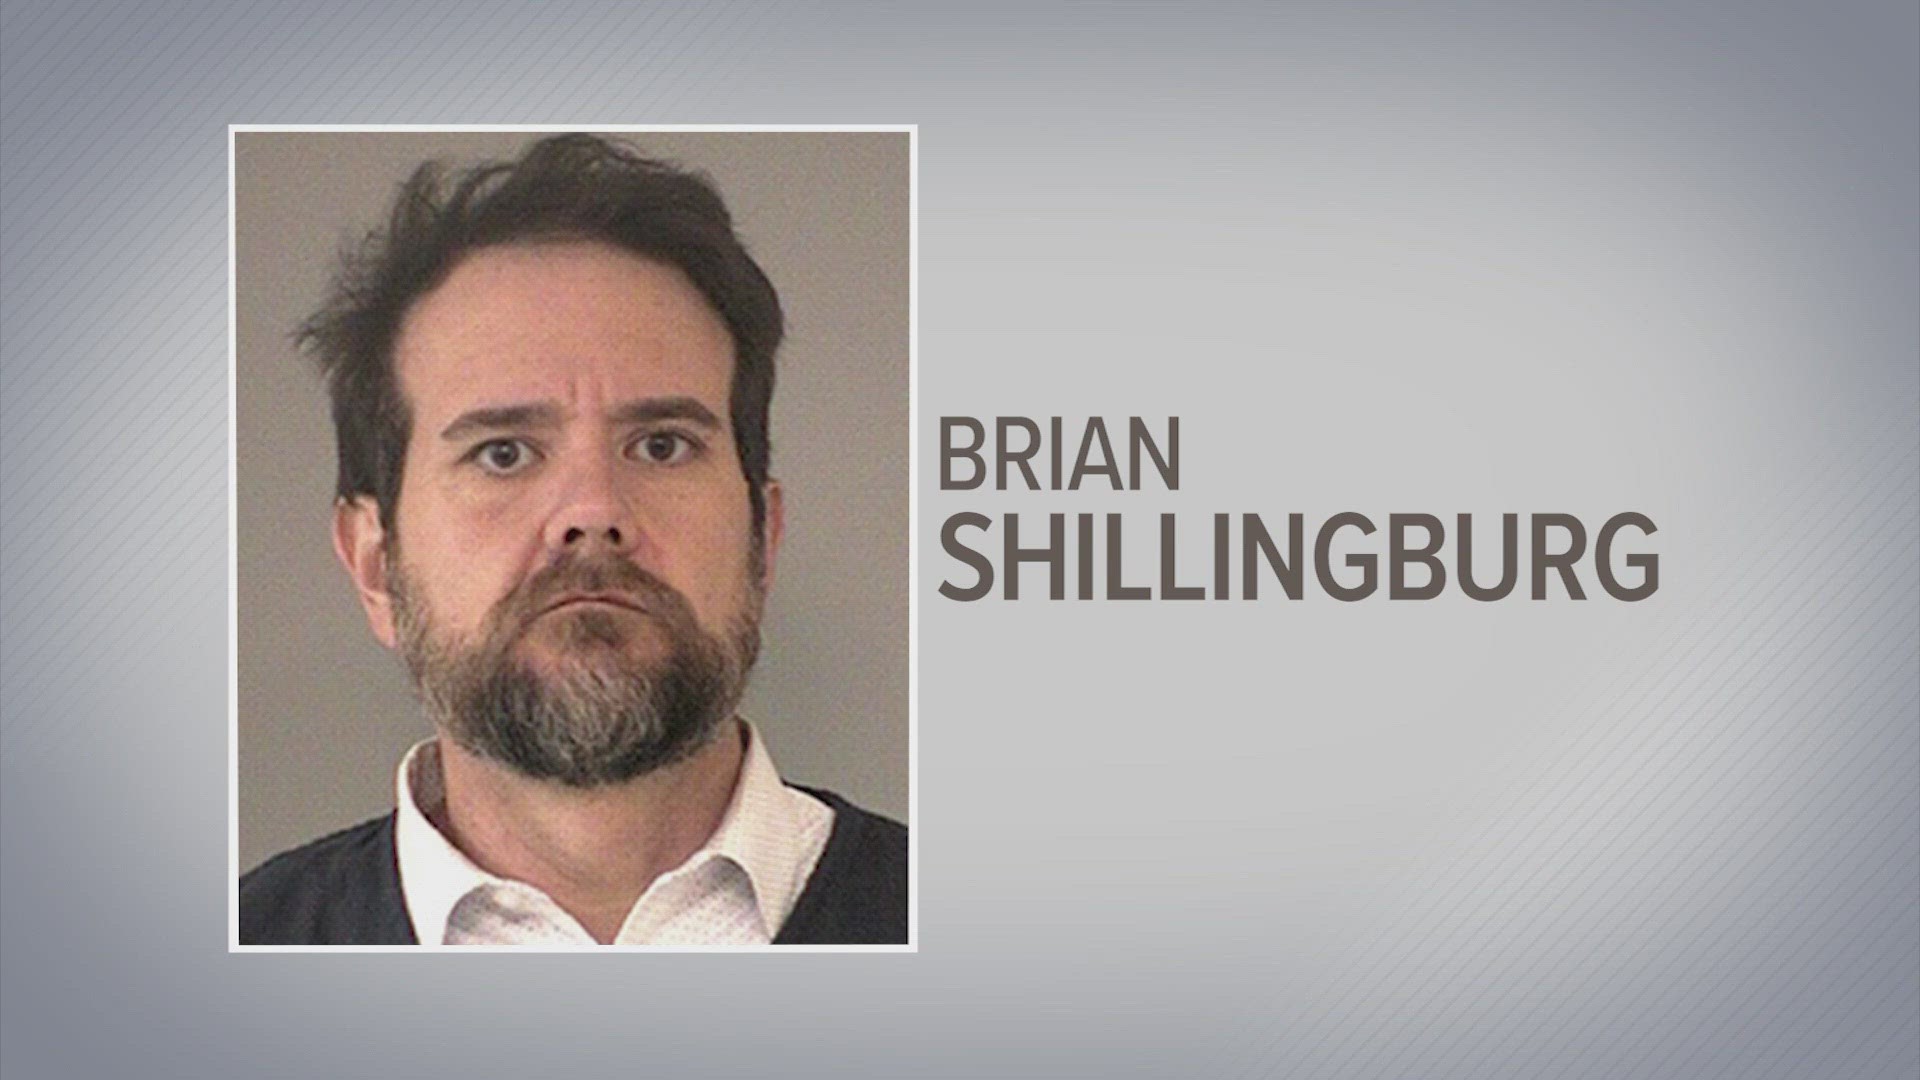 The district sent out a statement, confirming Shillingburg's arrest.